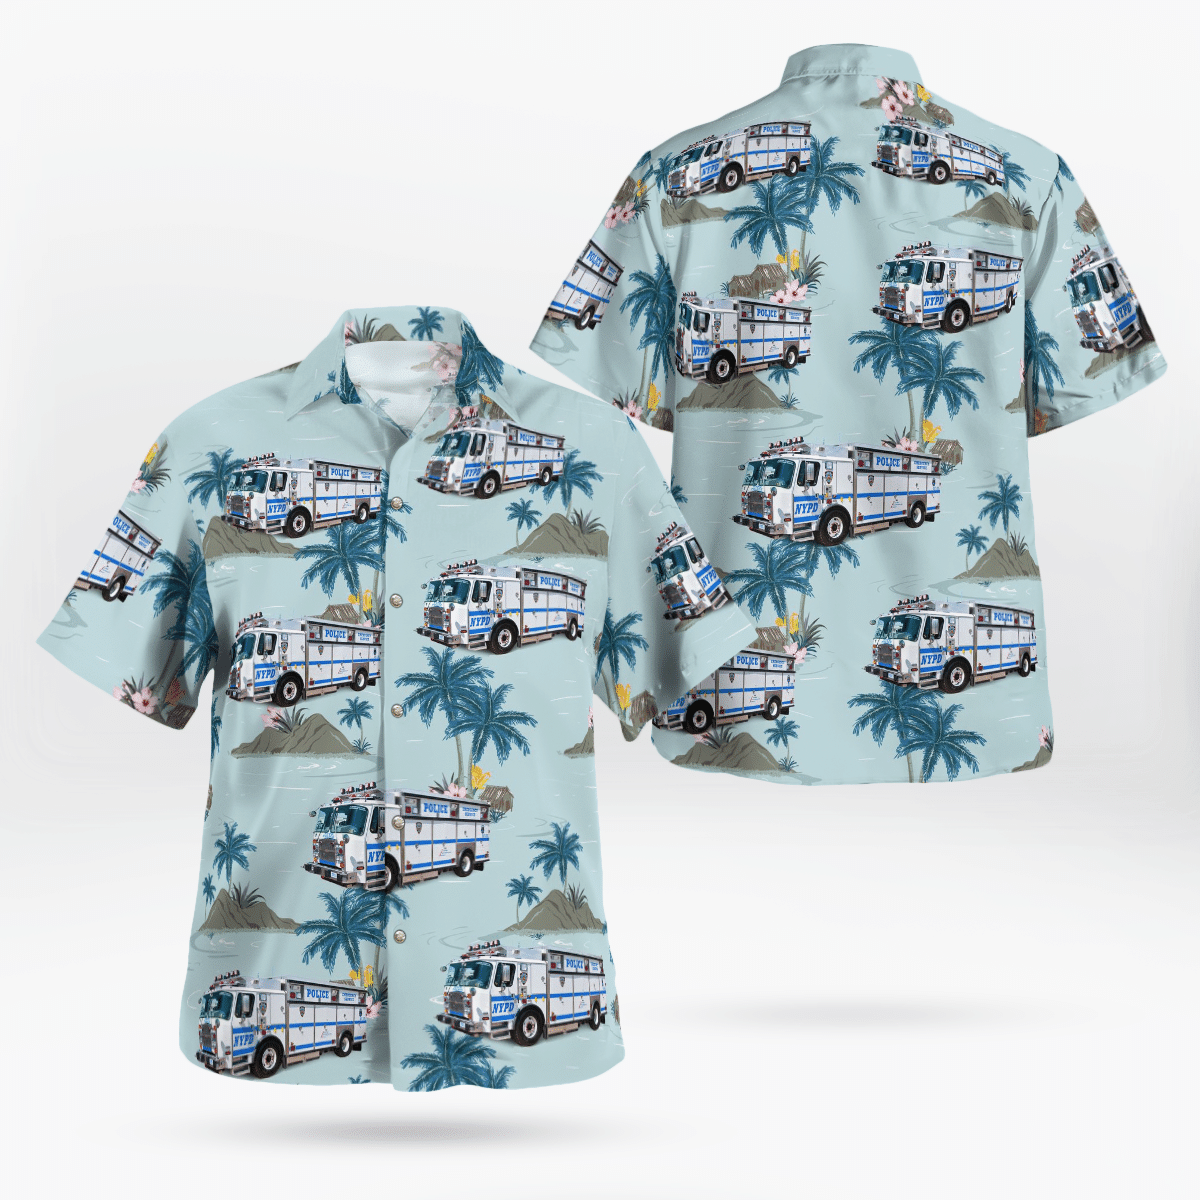 Best Hawaiian shirts 2022 264